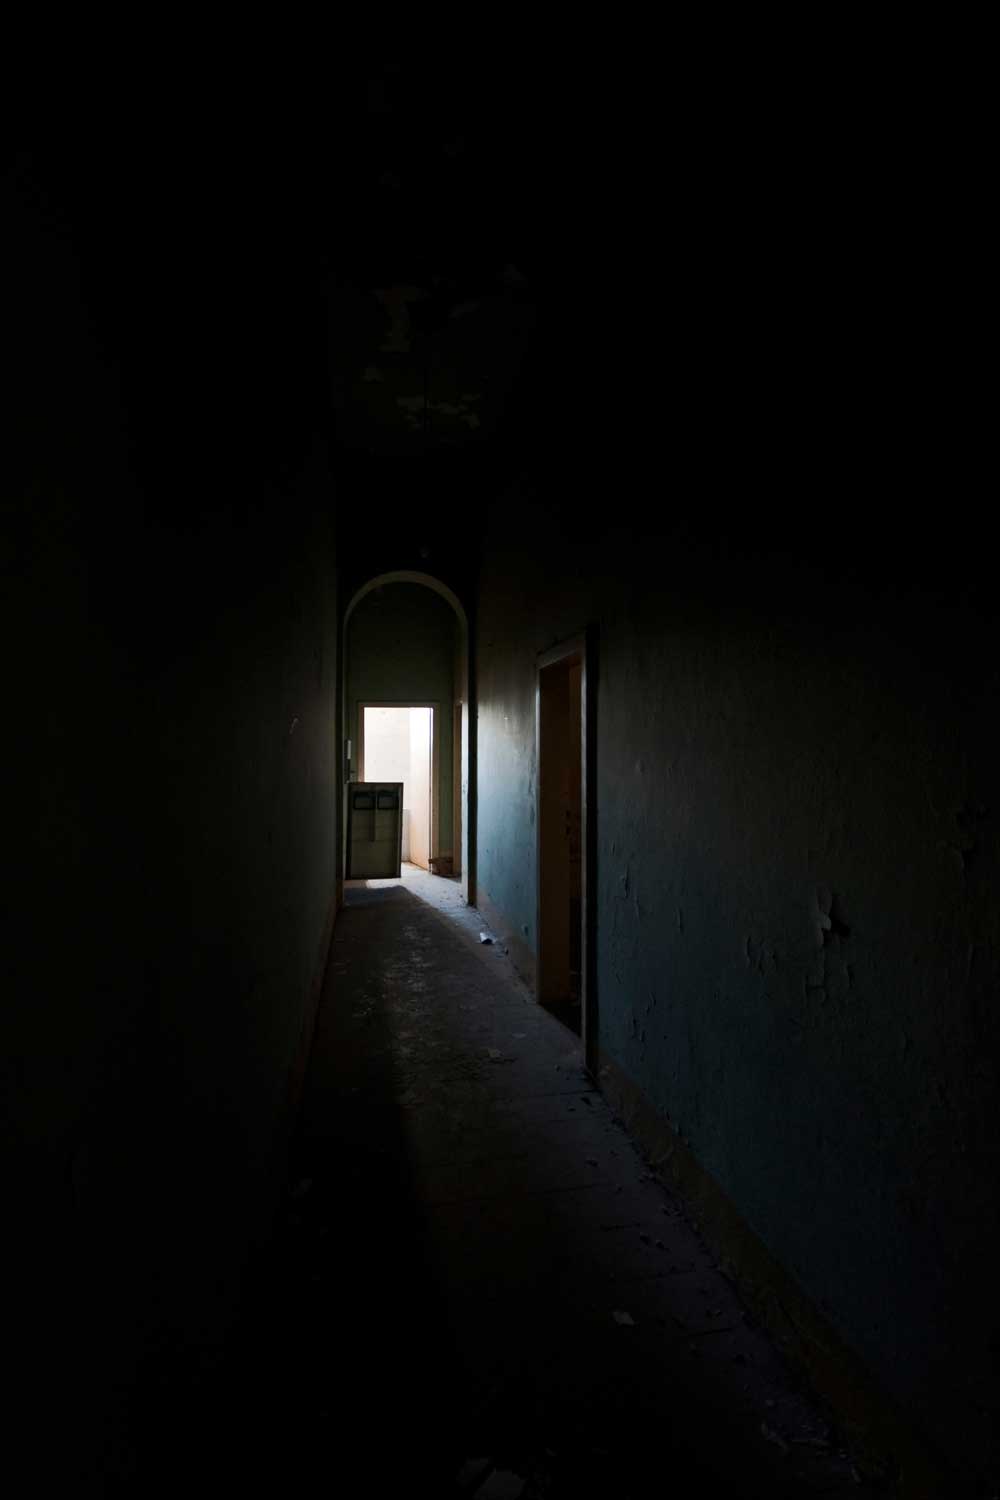 Interior abandonment / Lorenzo Linthout